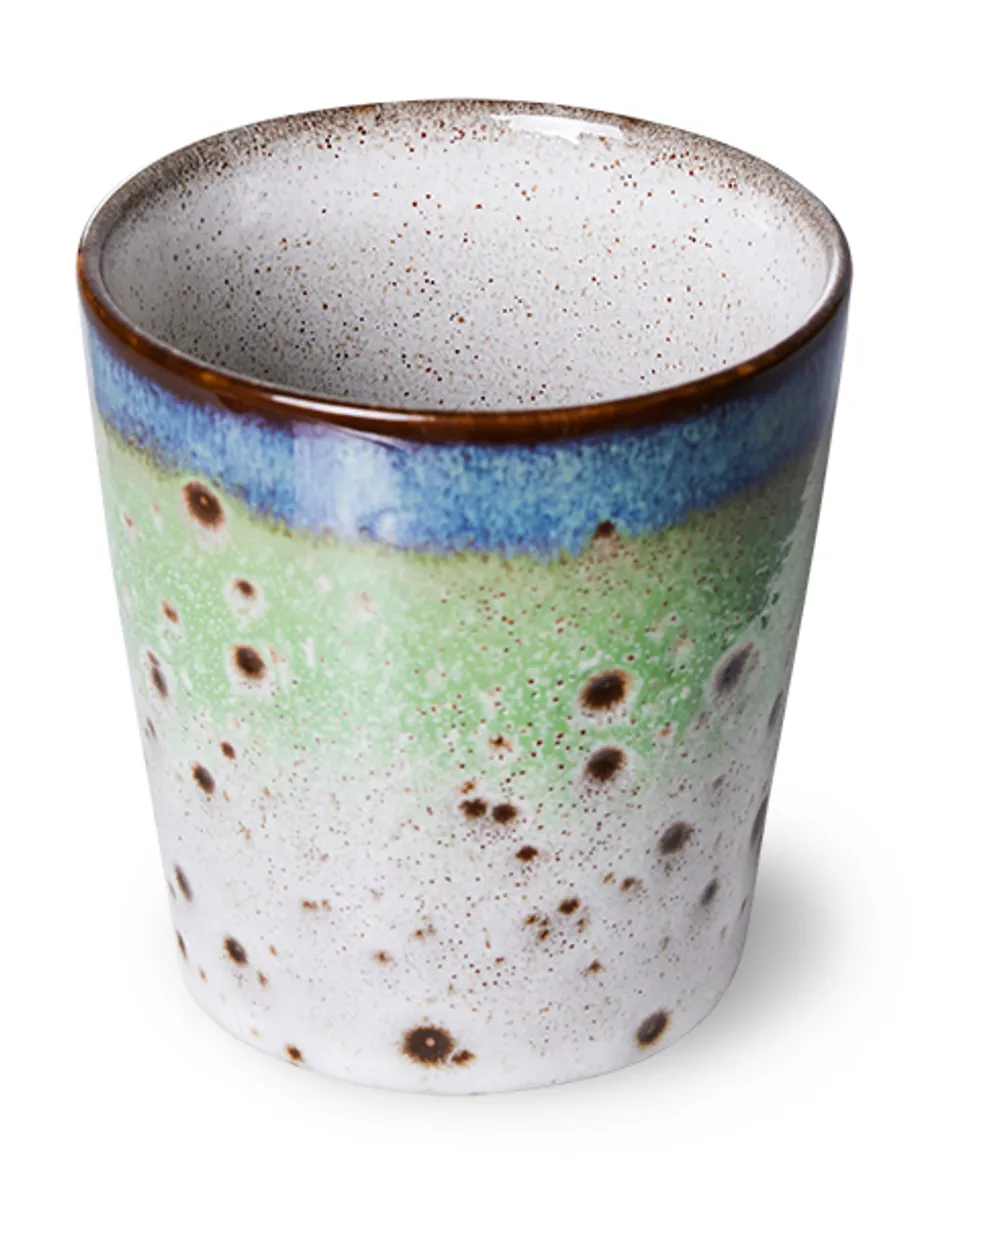 70s ceramics: coffee mug, comet